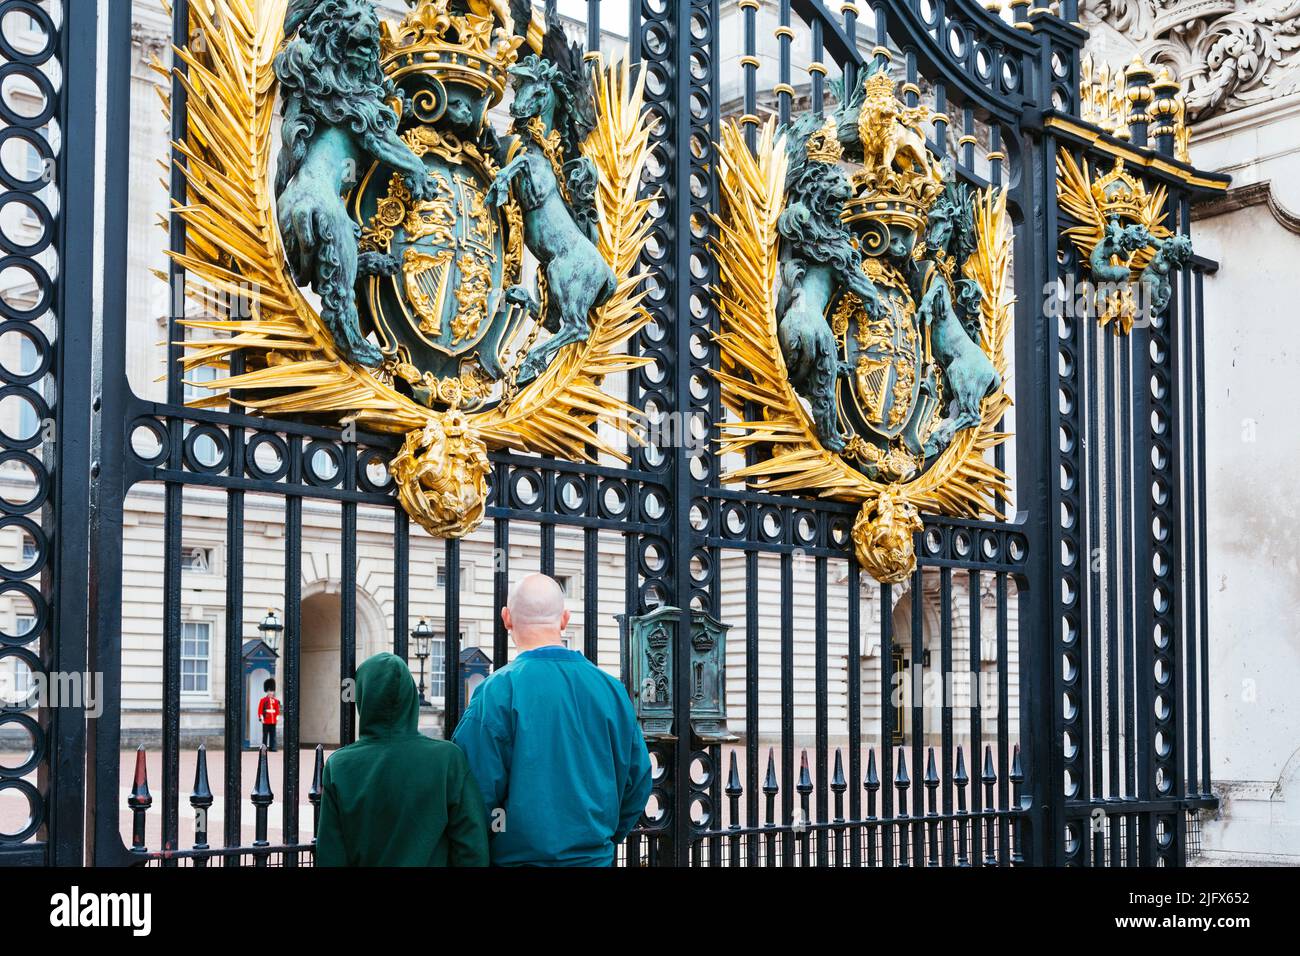 Cancelli di ferro per circondare Buckingham Palace. Royal Coat of Arms Gate del Buckingham Palace. Royal Coat of Arms, un leone, che simboleggia l'Inghilterra, e unico Foto Stock